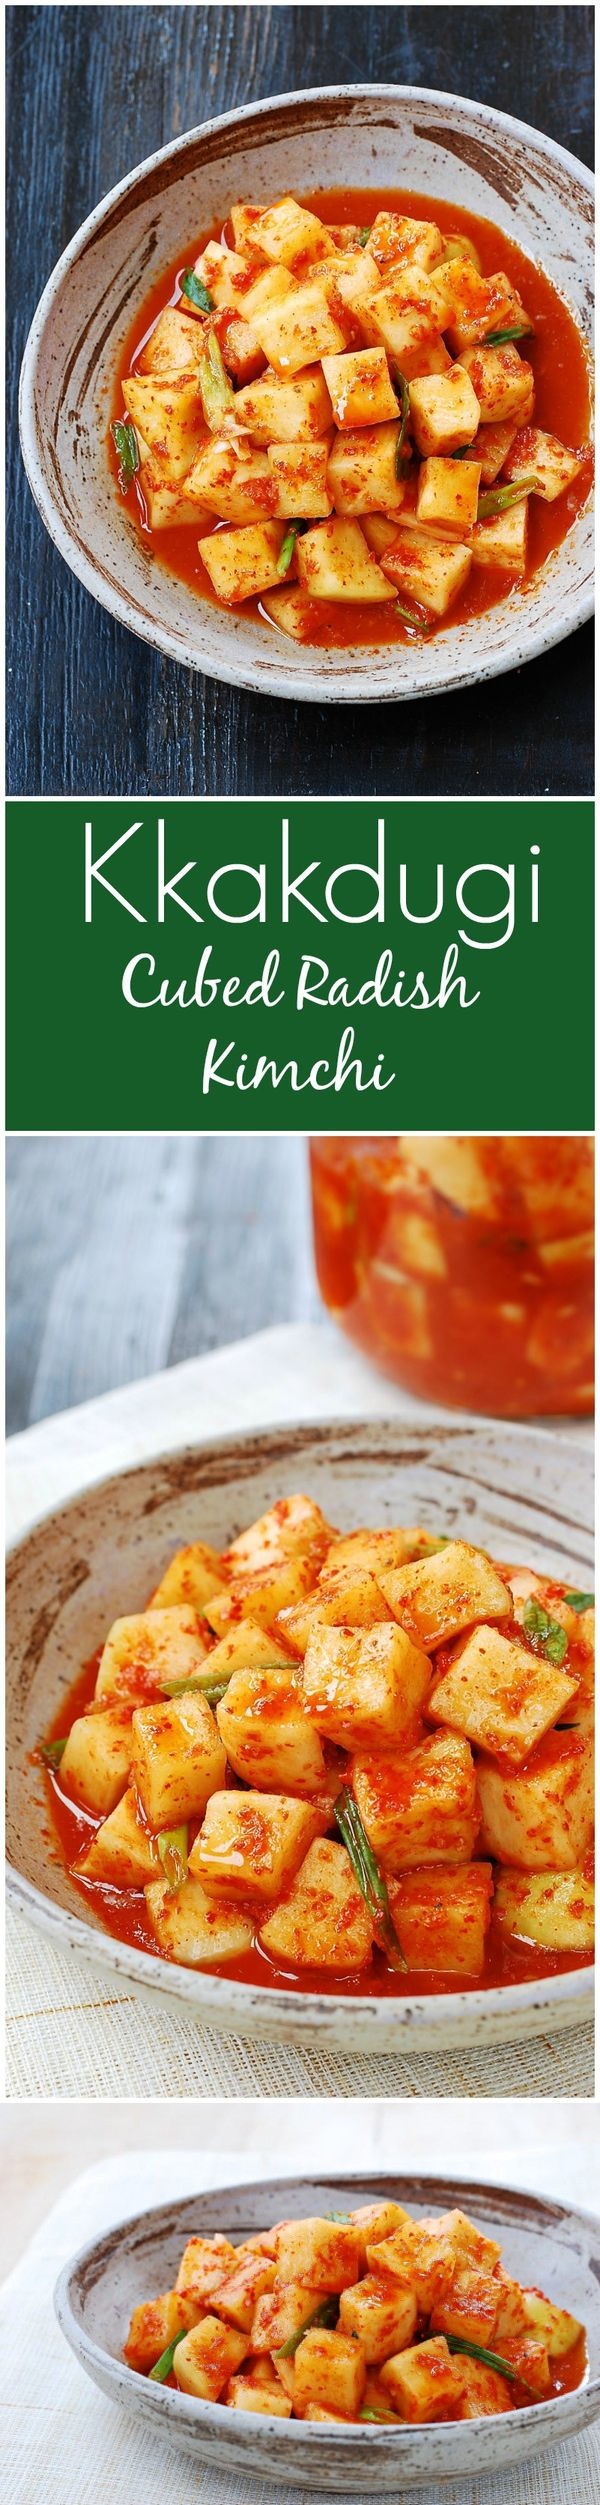 Kkakdugi (Cubed Radish Kimchi